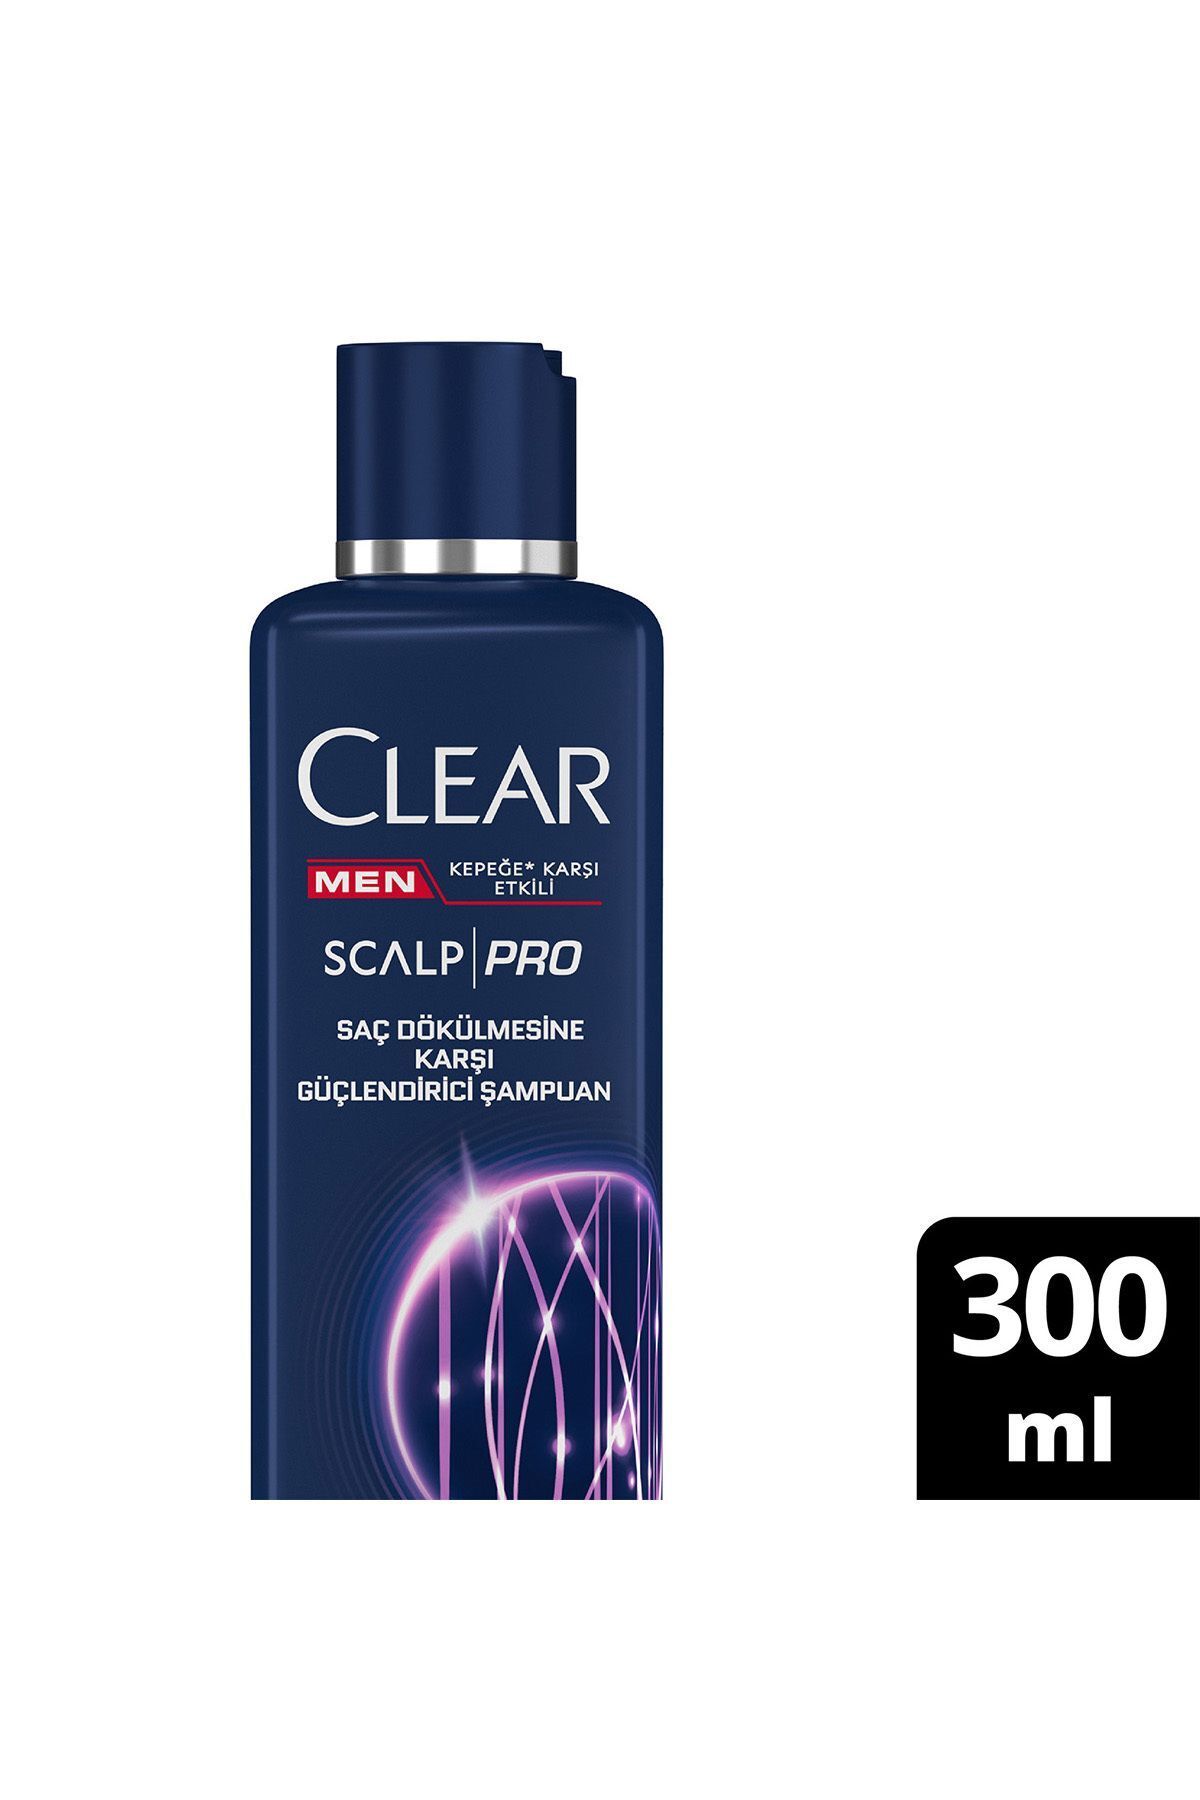 Clear Men Scalp Pro Güçlendirici Şampuan Saç Dökülmesine Ve Kepeğe Karşı Etkili 300 ml